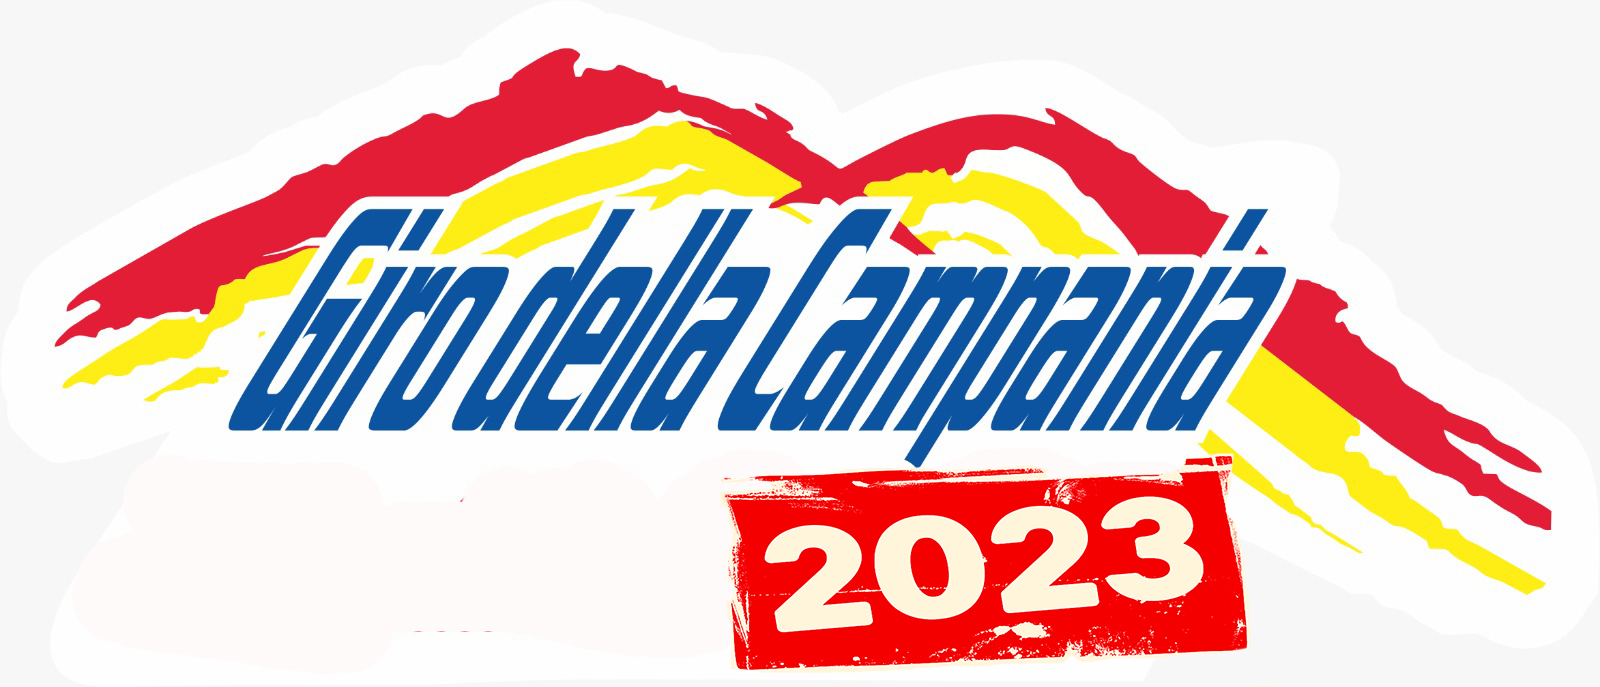 Giro della Campania 2023 nuova edizione ed abbonamento regalo natalizio !!!